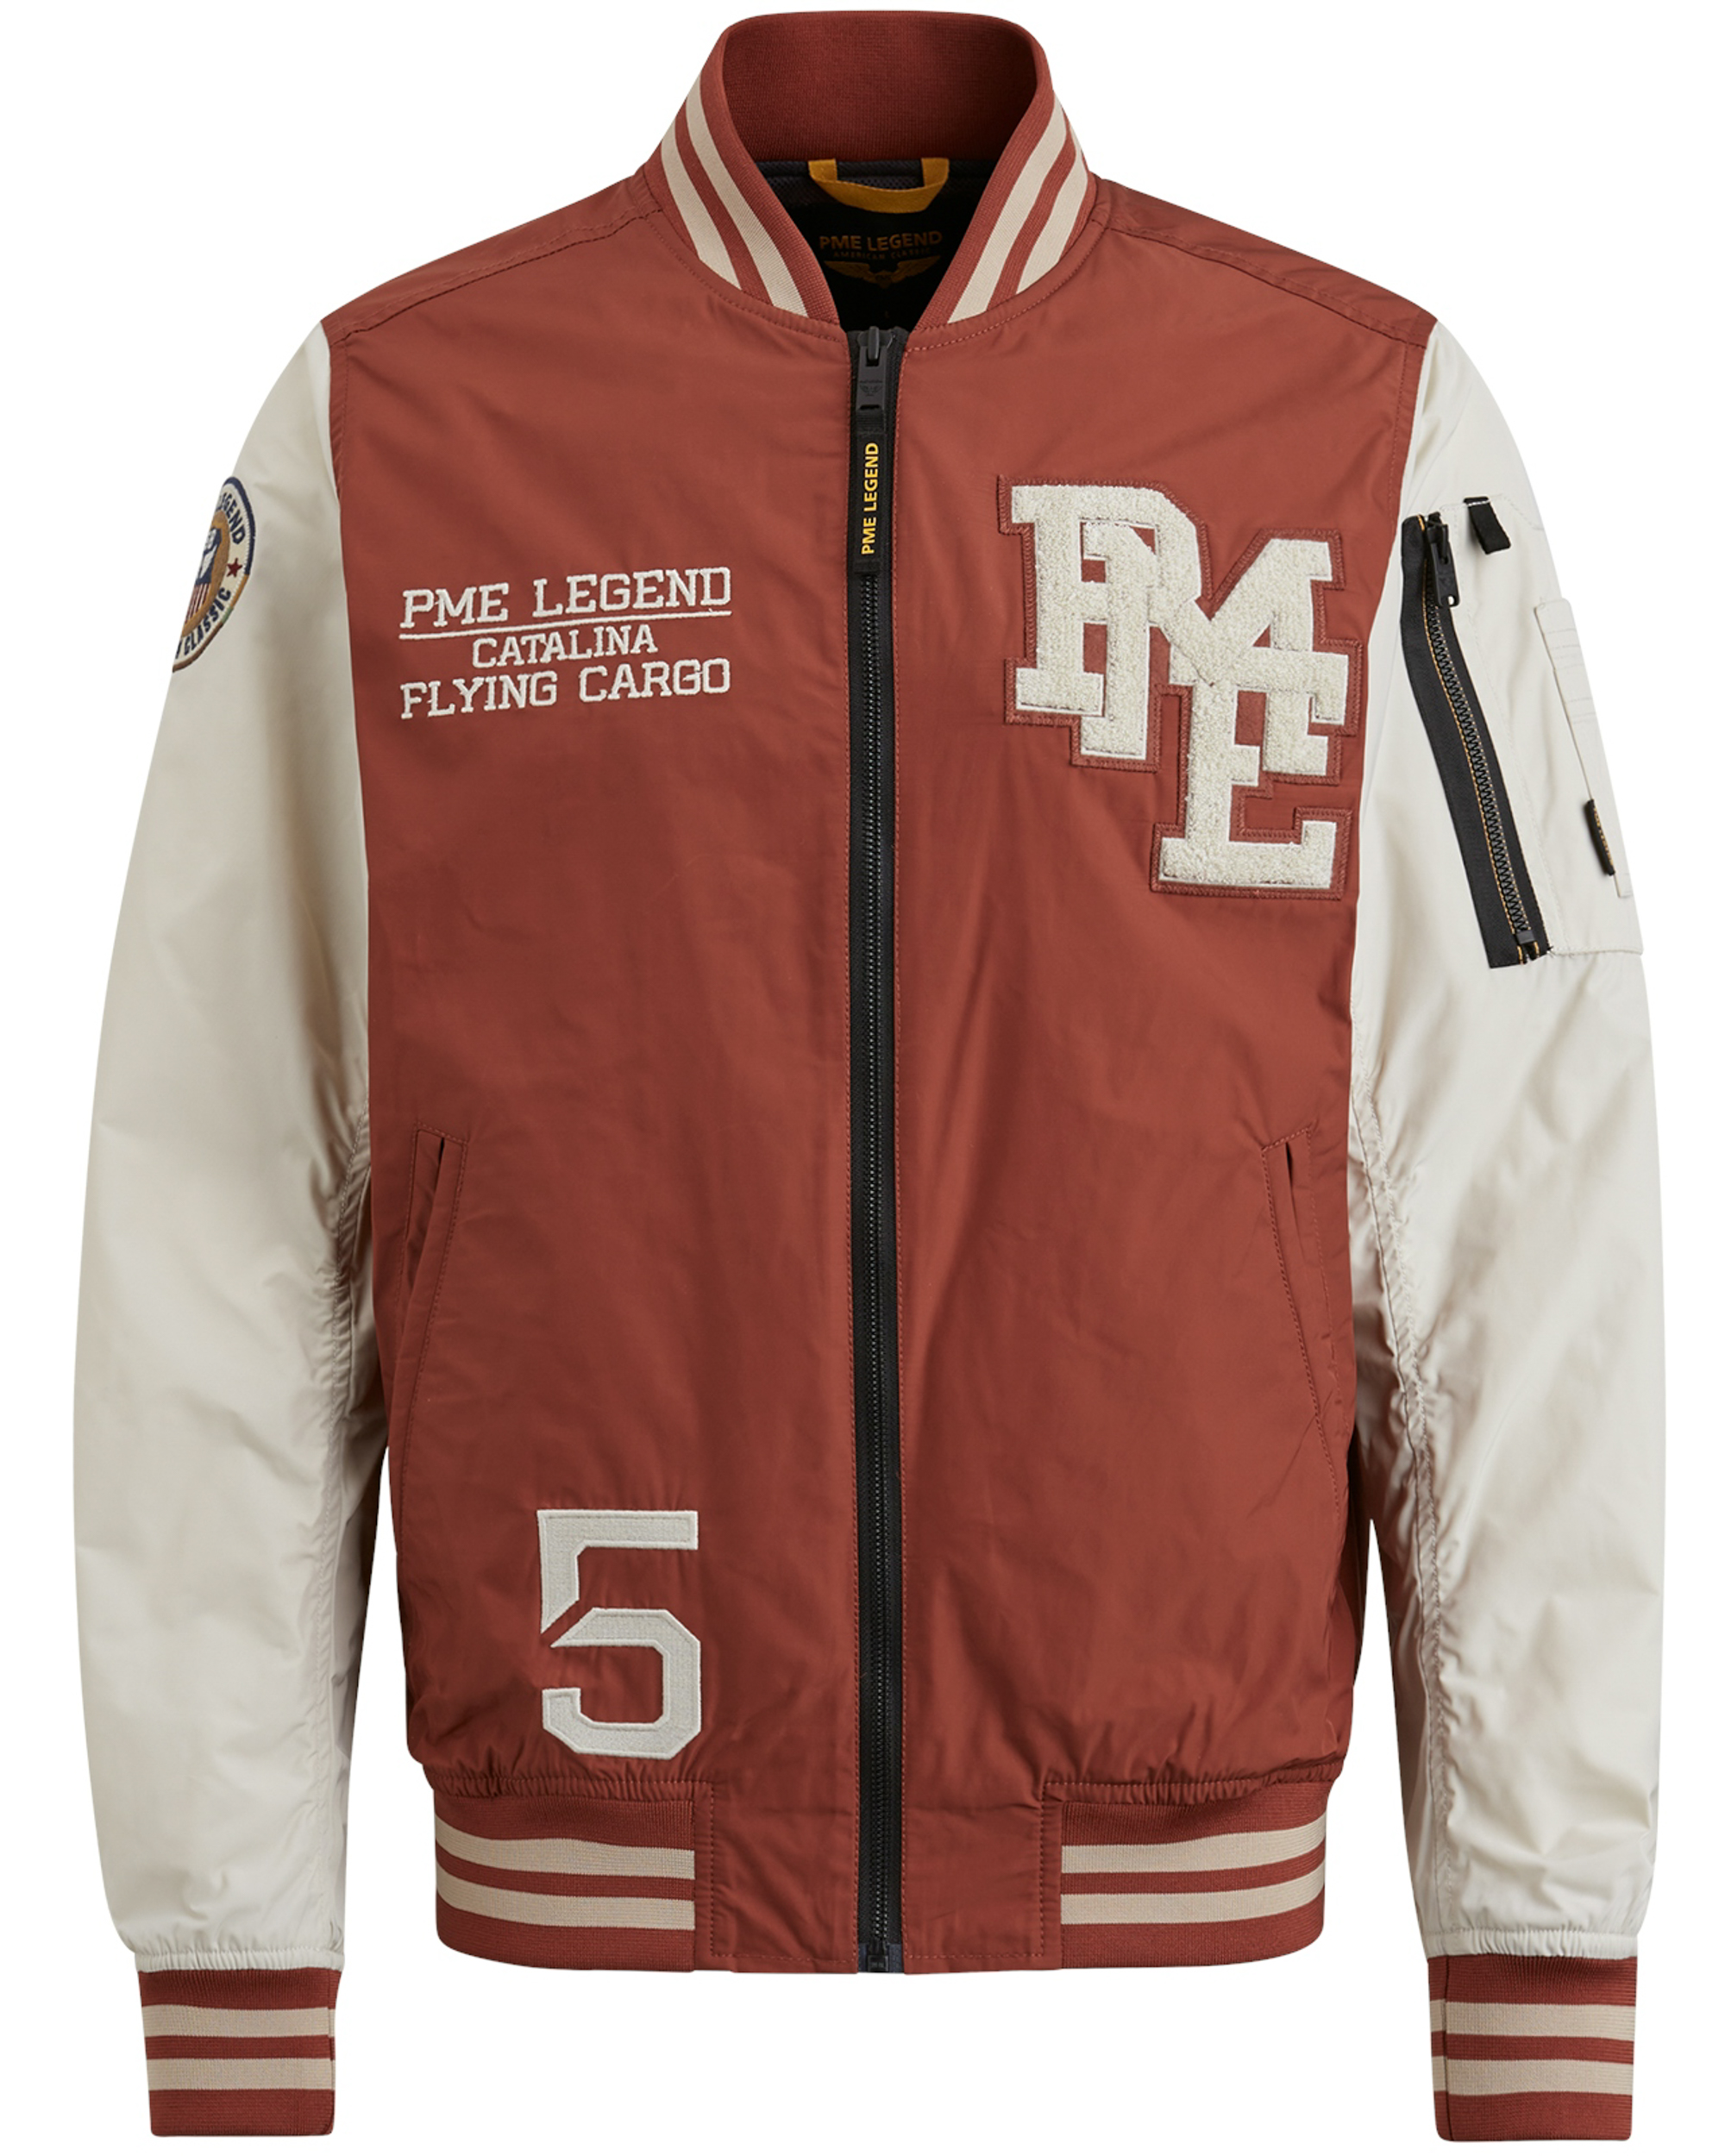 PME Legend Reliant varsity jacket